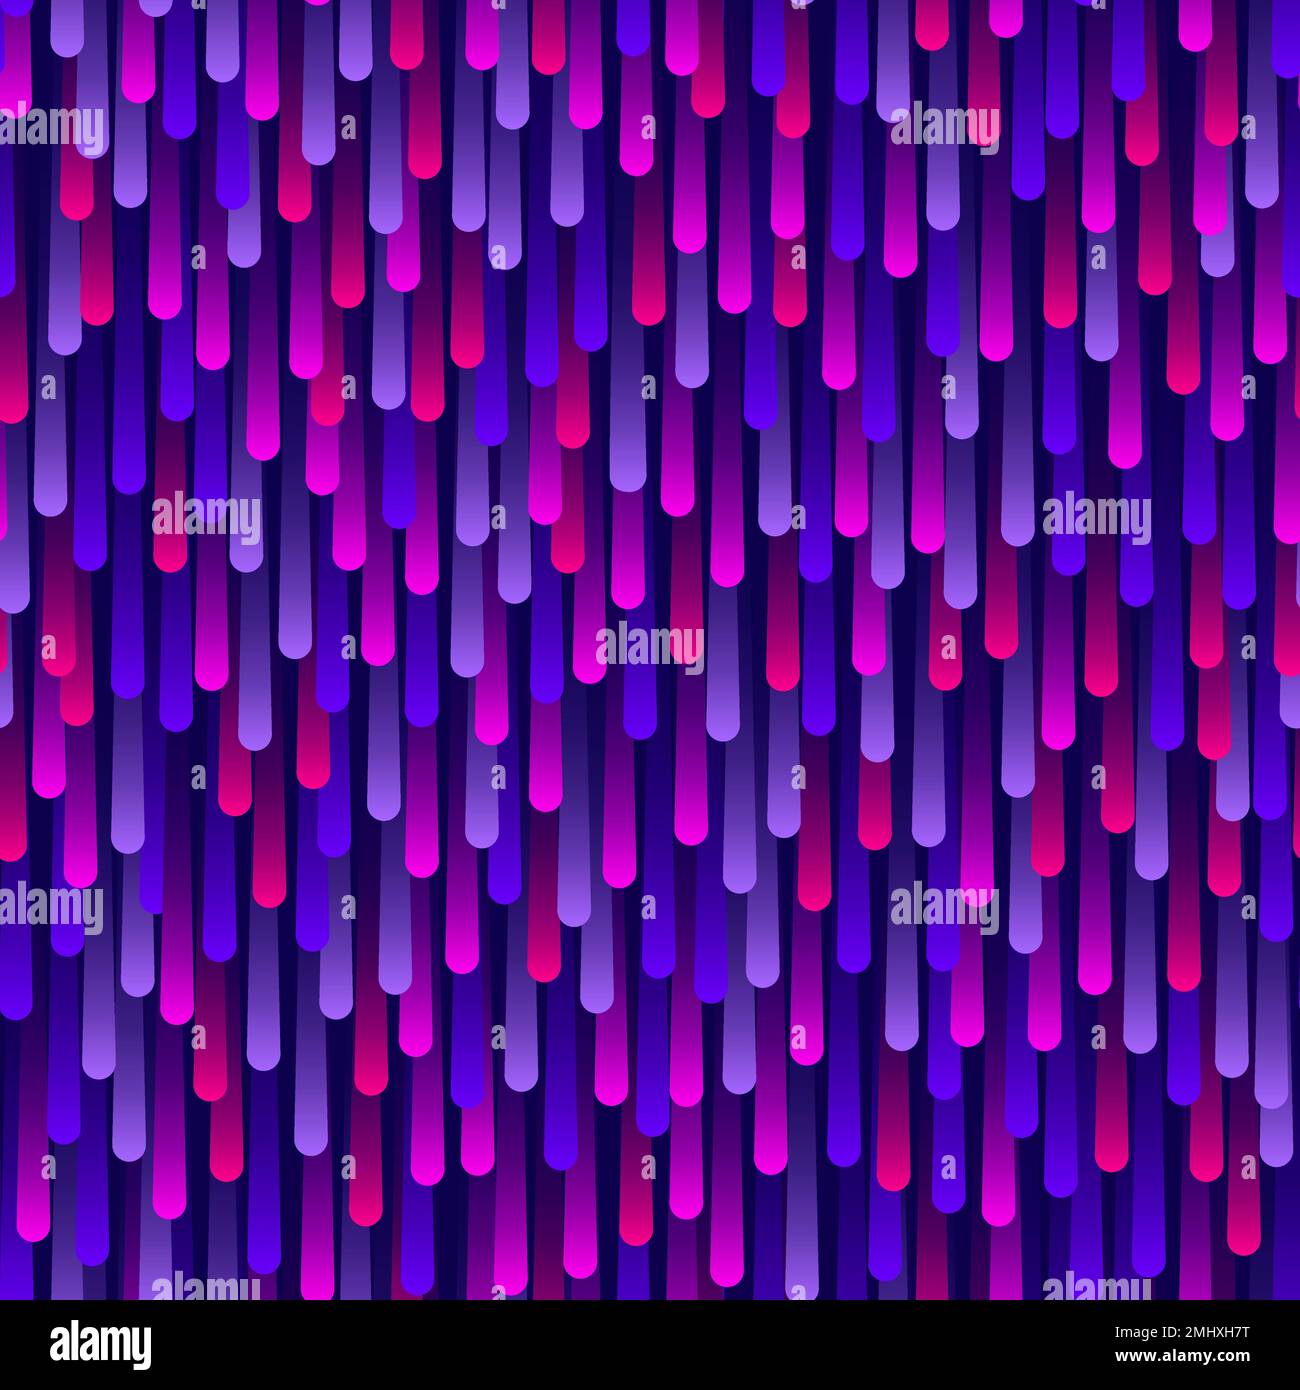 La pluie violette fluo s'abaisse sur fond bleu foncé. Motif de rayures colorées et placées au hasard. Illustration vectorielle Illustration de Vecteur